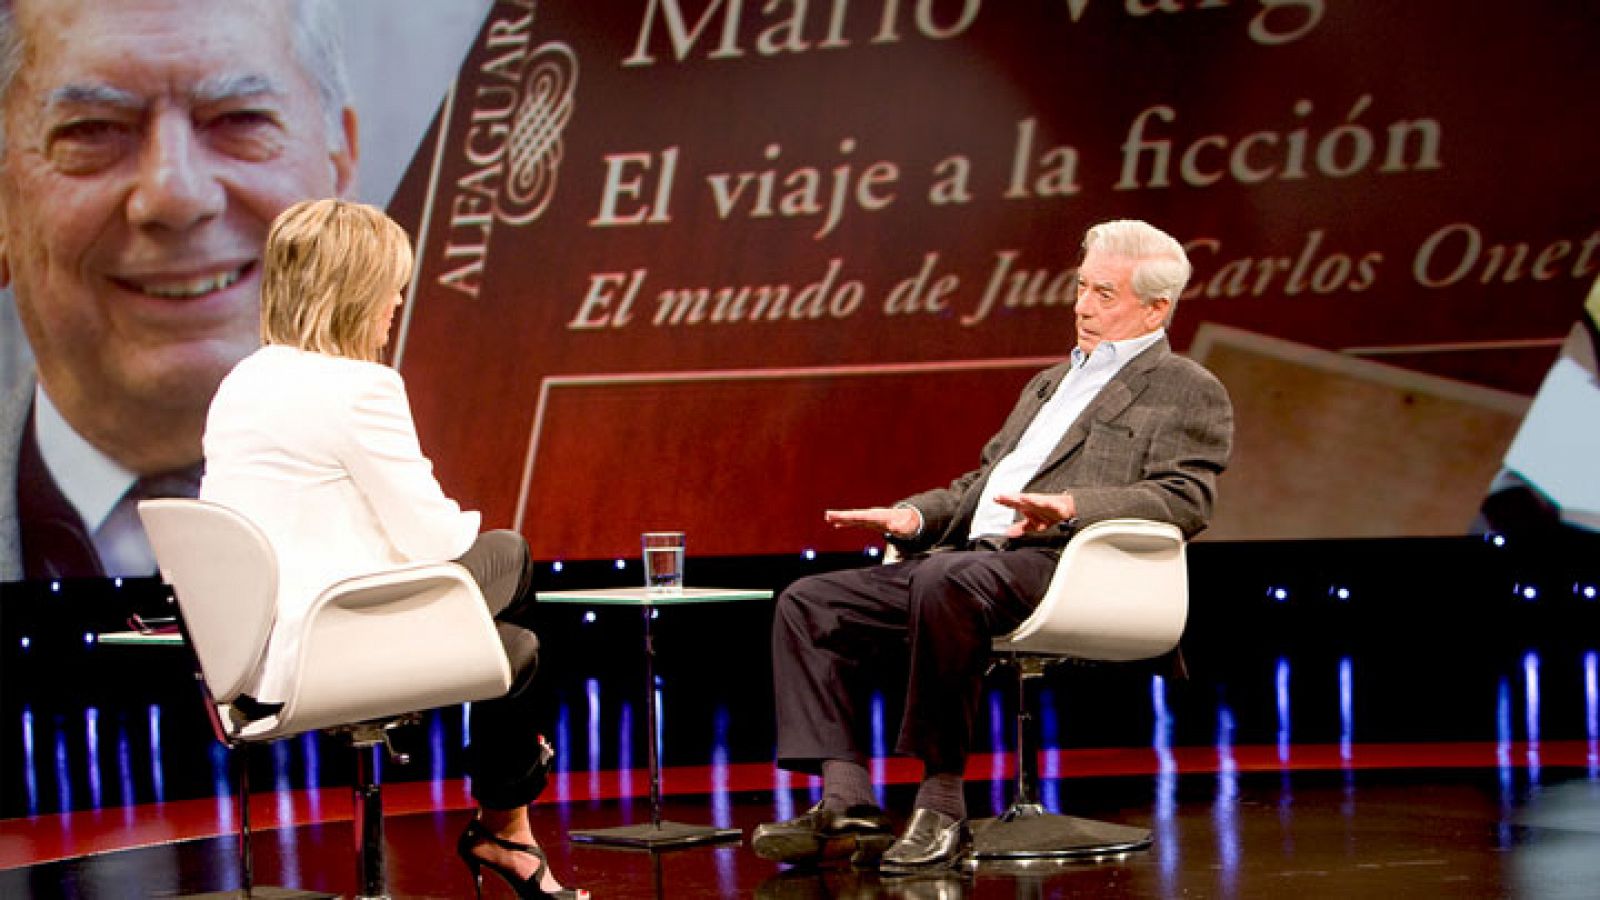 Entrevista a la carta - Mario Vargas Llosa - Ver ahora